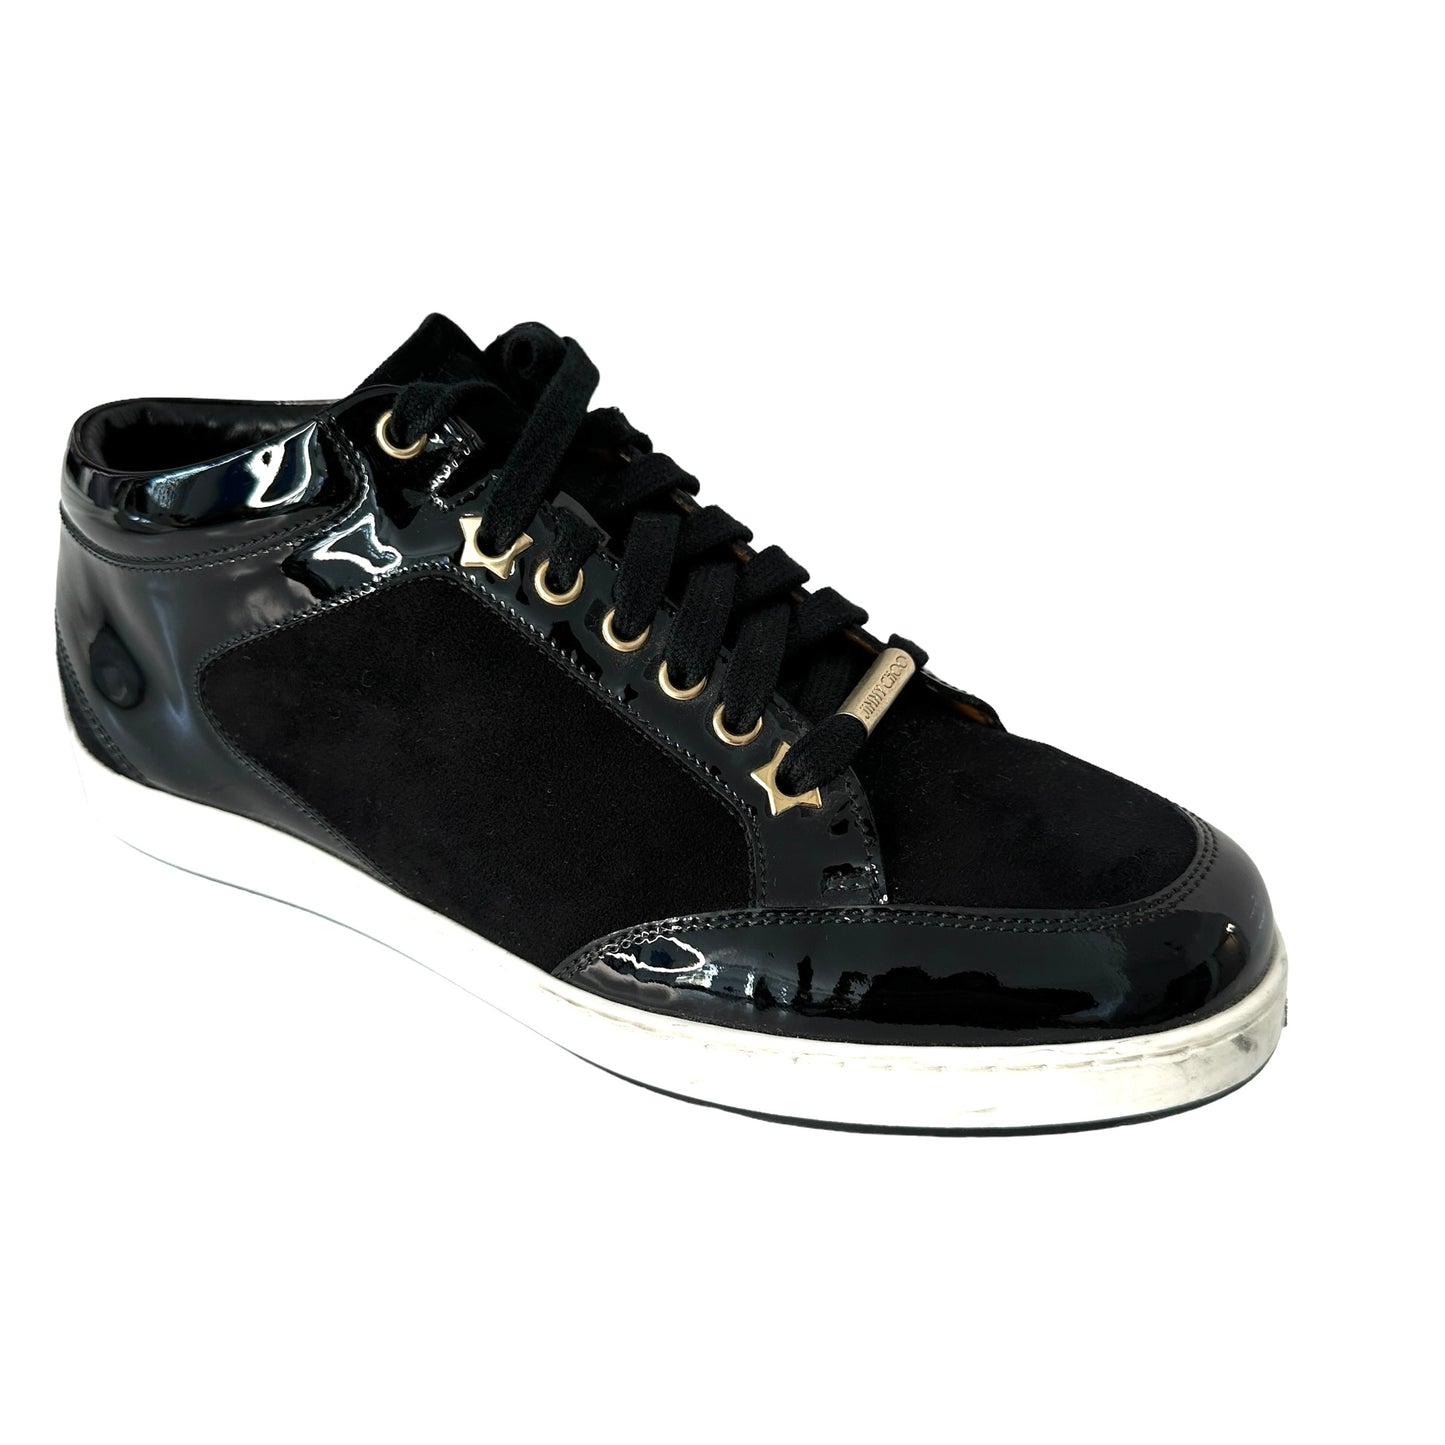 Black Suede Sneakers - 9